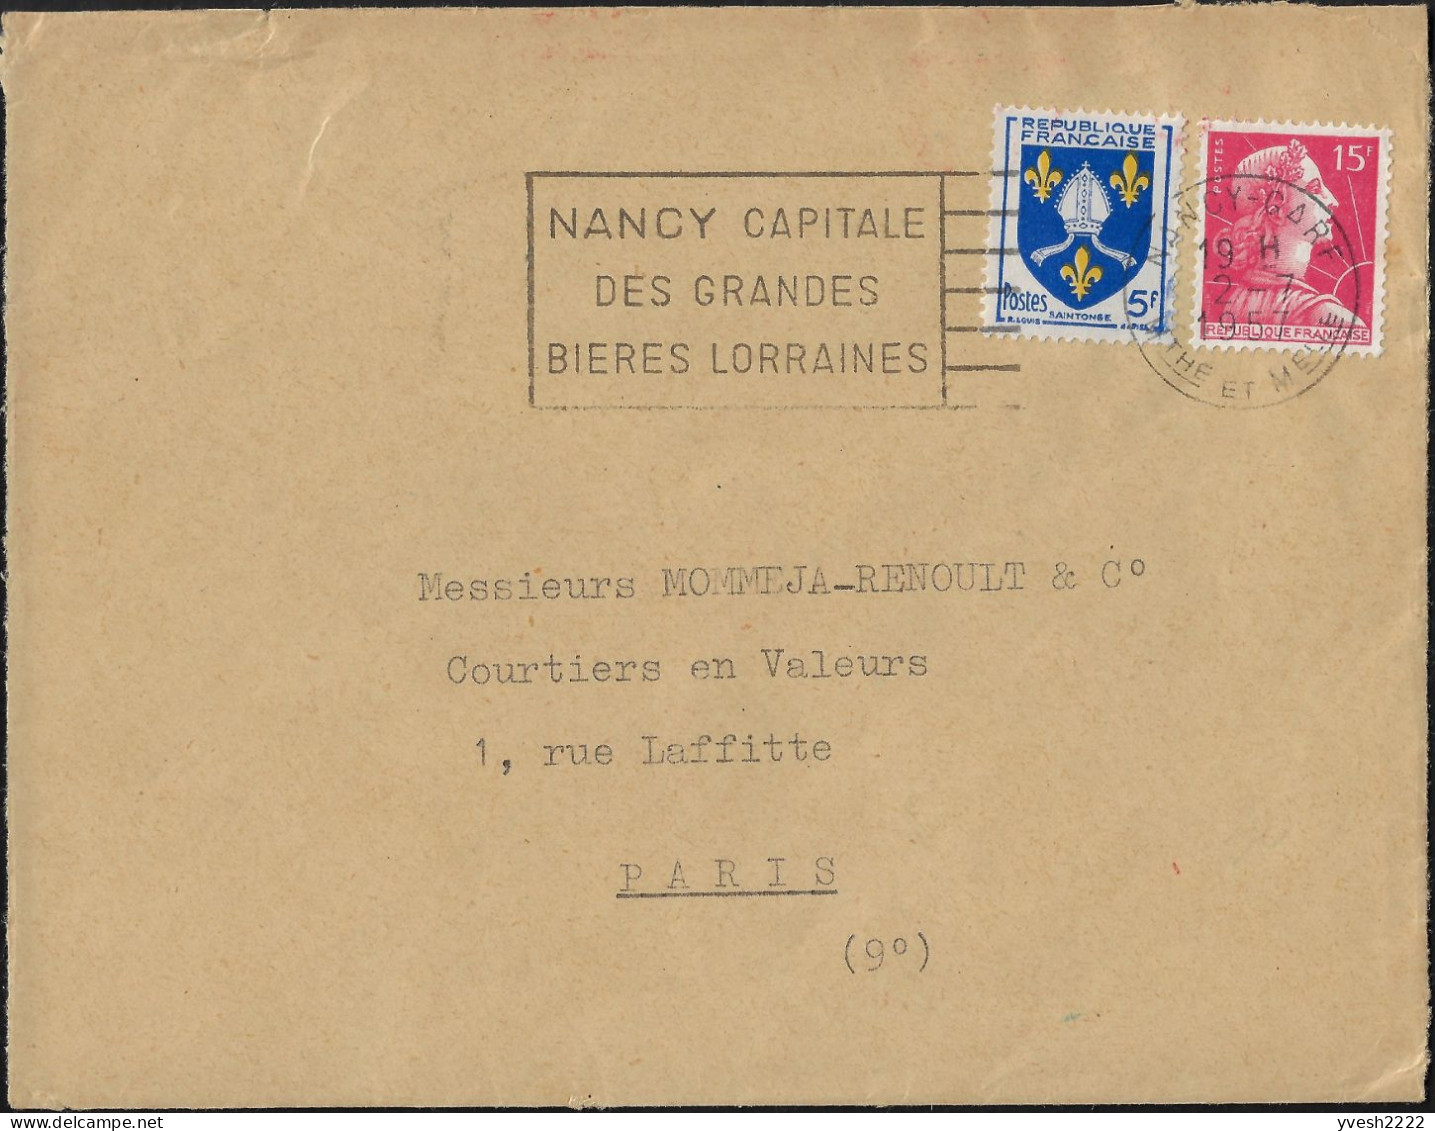 France 1959  Nancy, Capitale Des Grandes Bières Lorraines - Bier